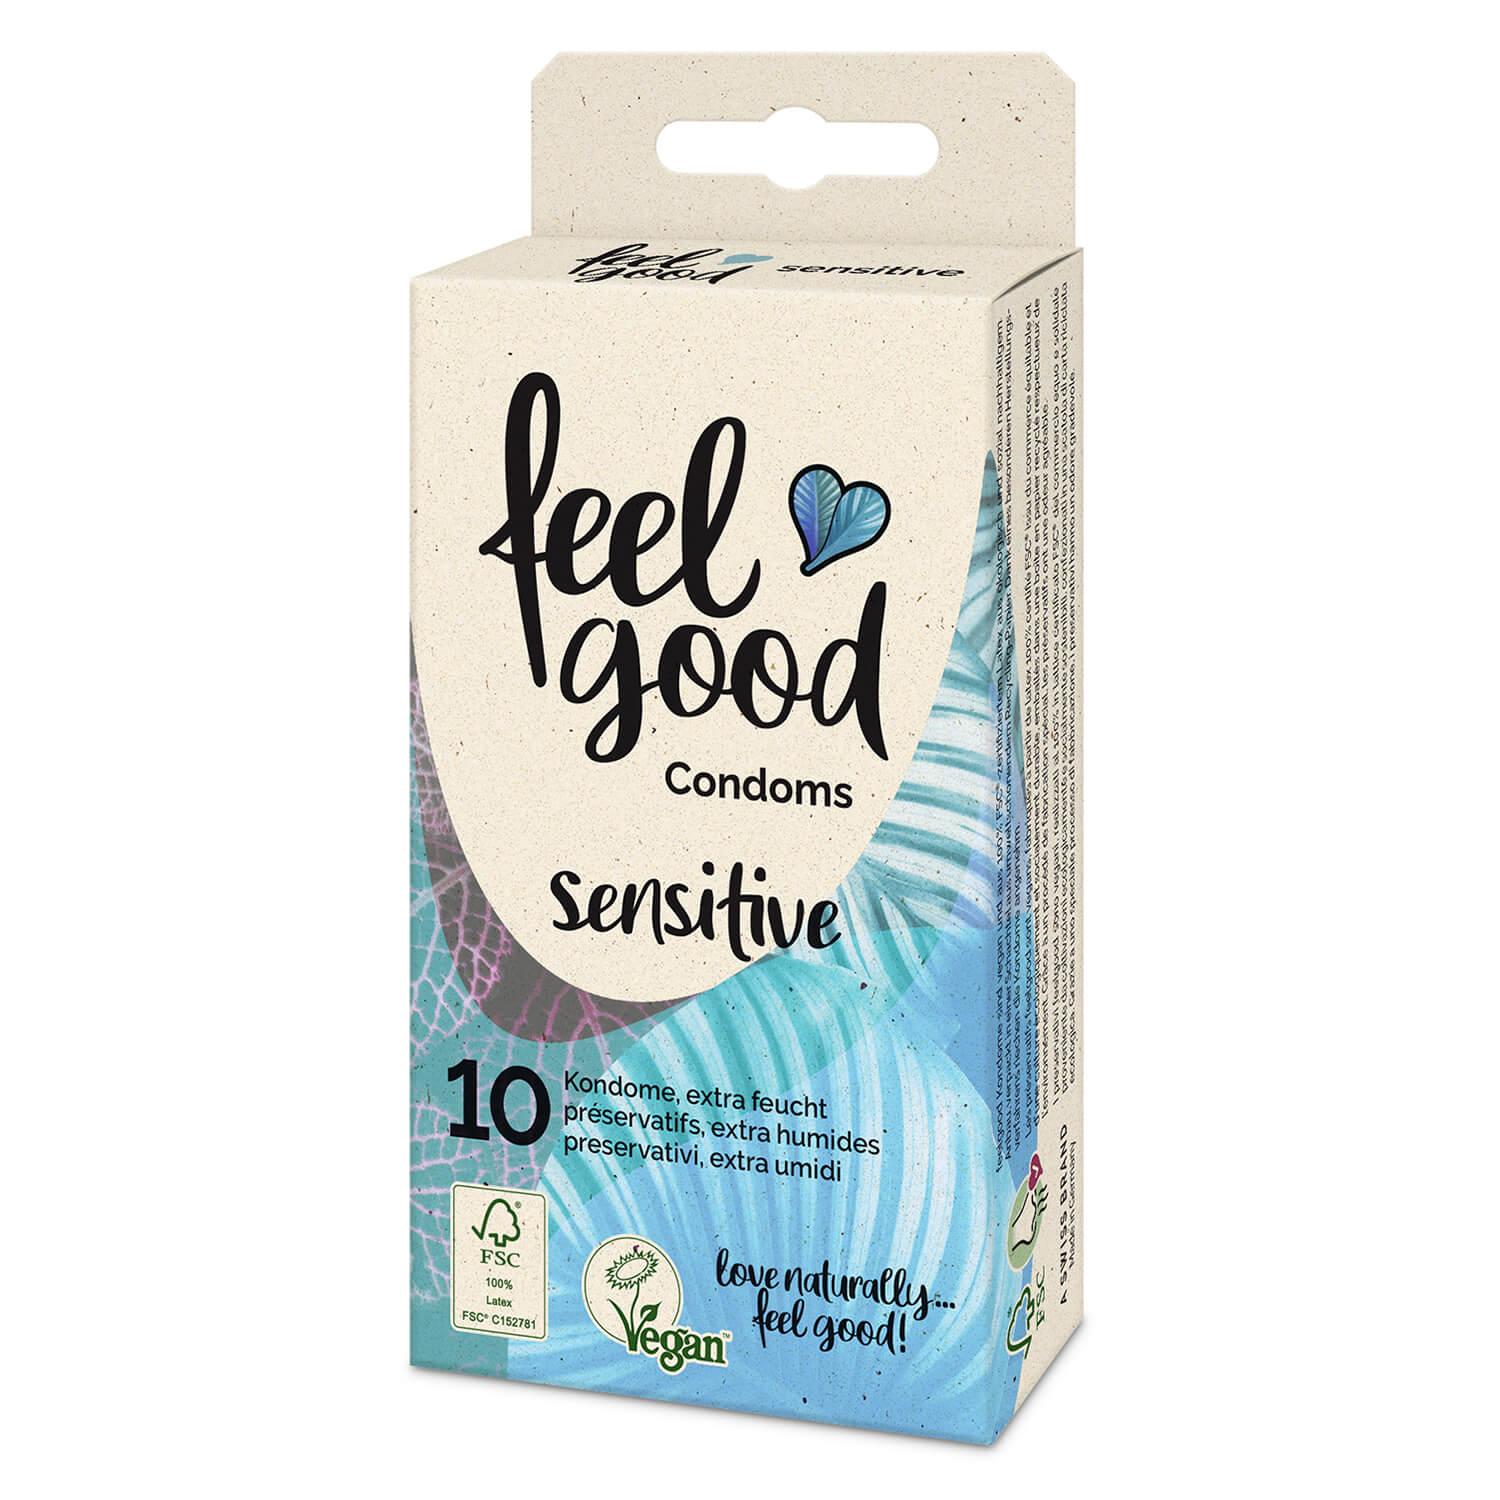 feelgood condoms - Kondome sensitive